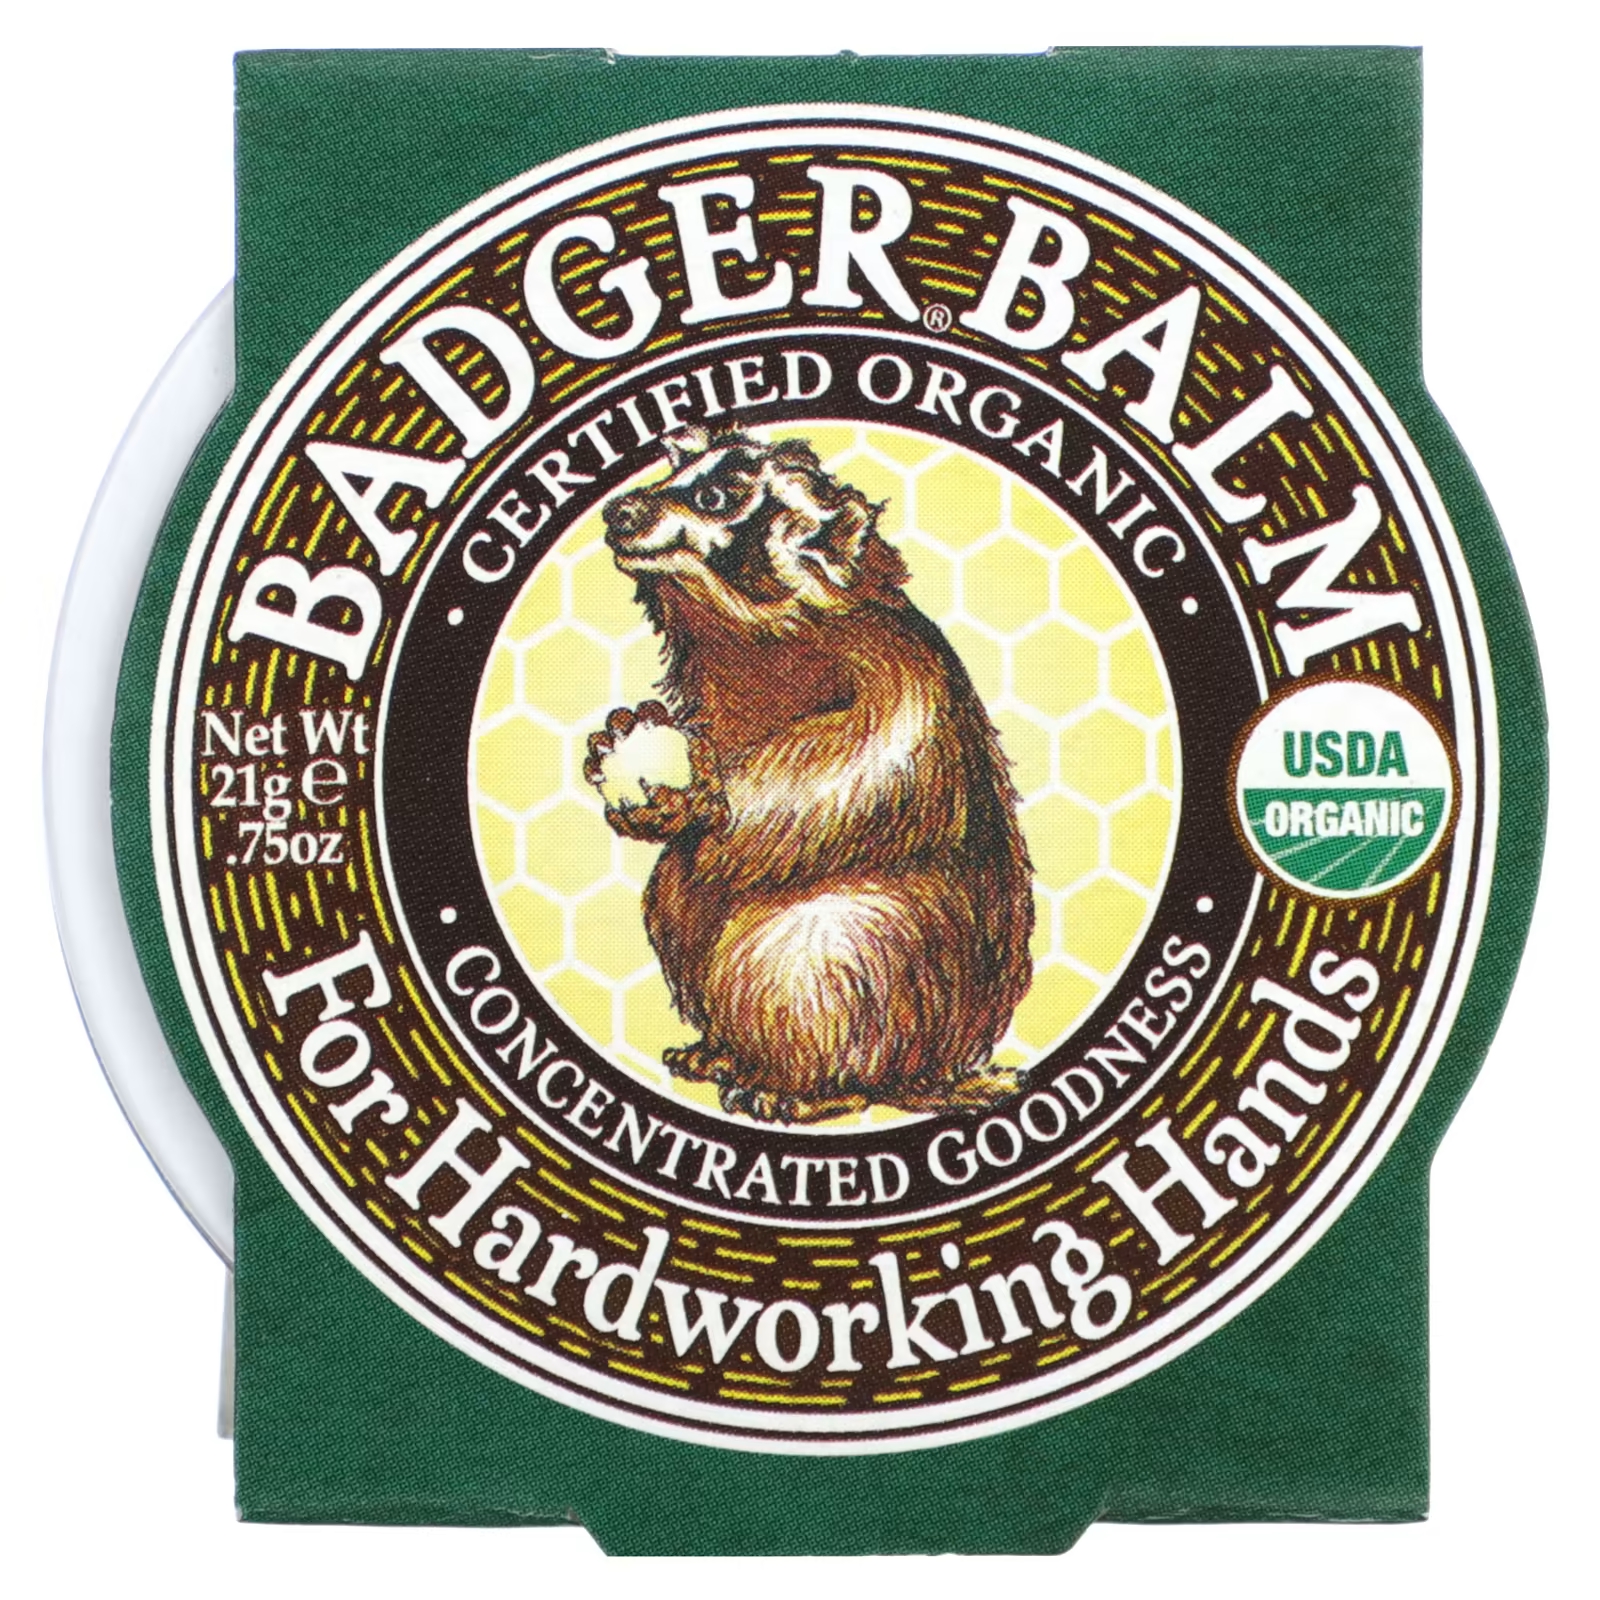 Органический бальзам Badger Company badger for hardworking hands, 21 гр. цена и фото